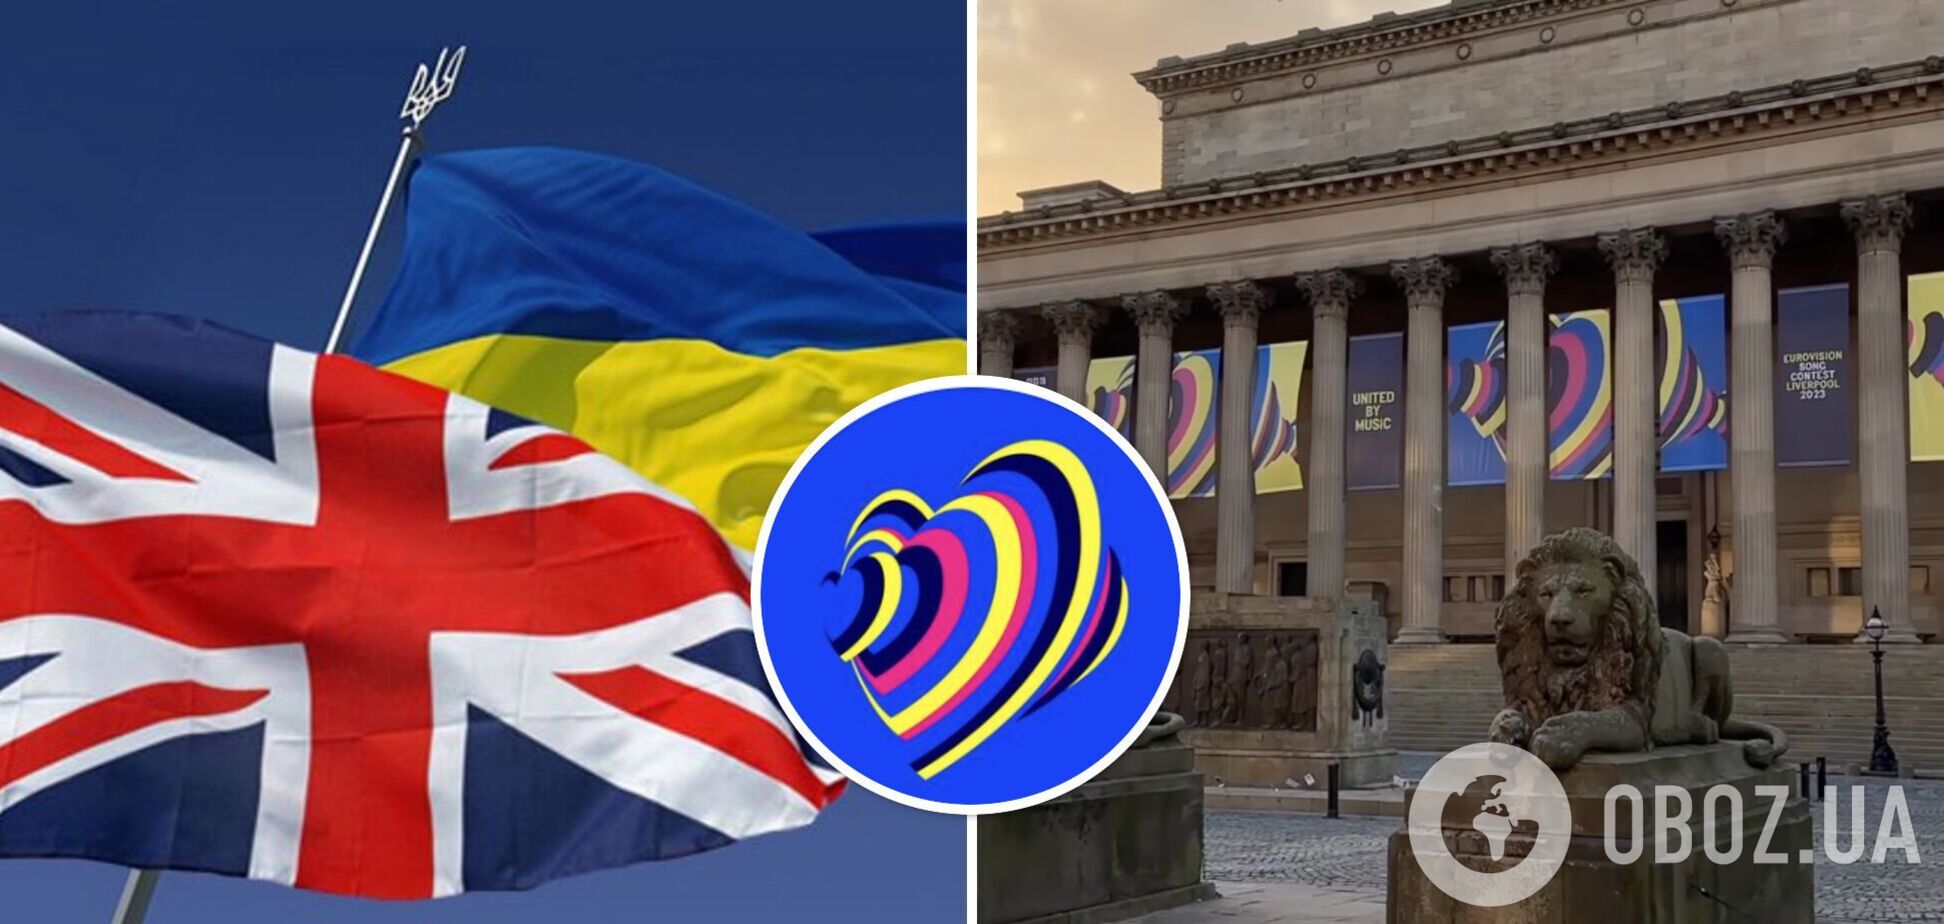 Организаторы 'Евровидения' представили официальный логотип и слоган конкурса: как обыграли цвета Украины